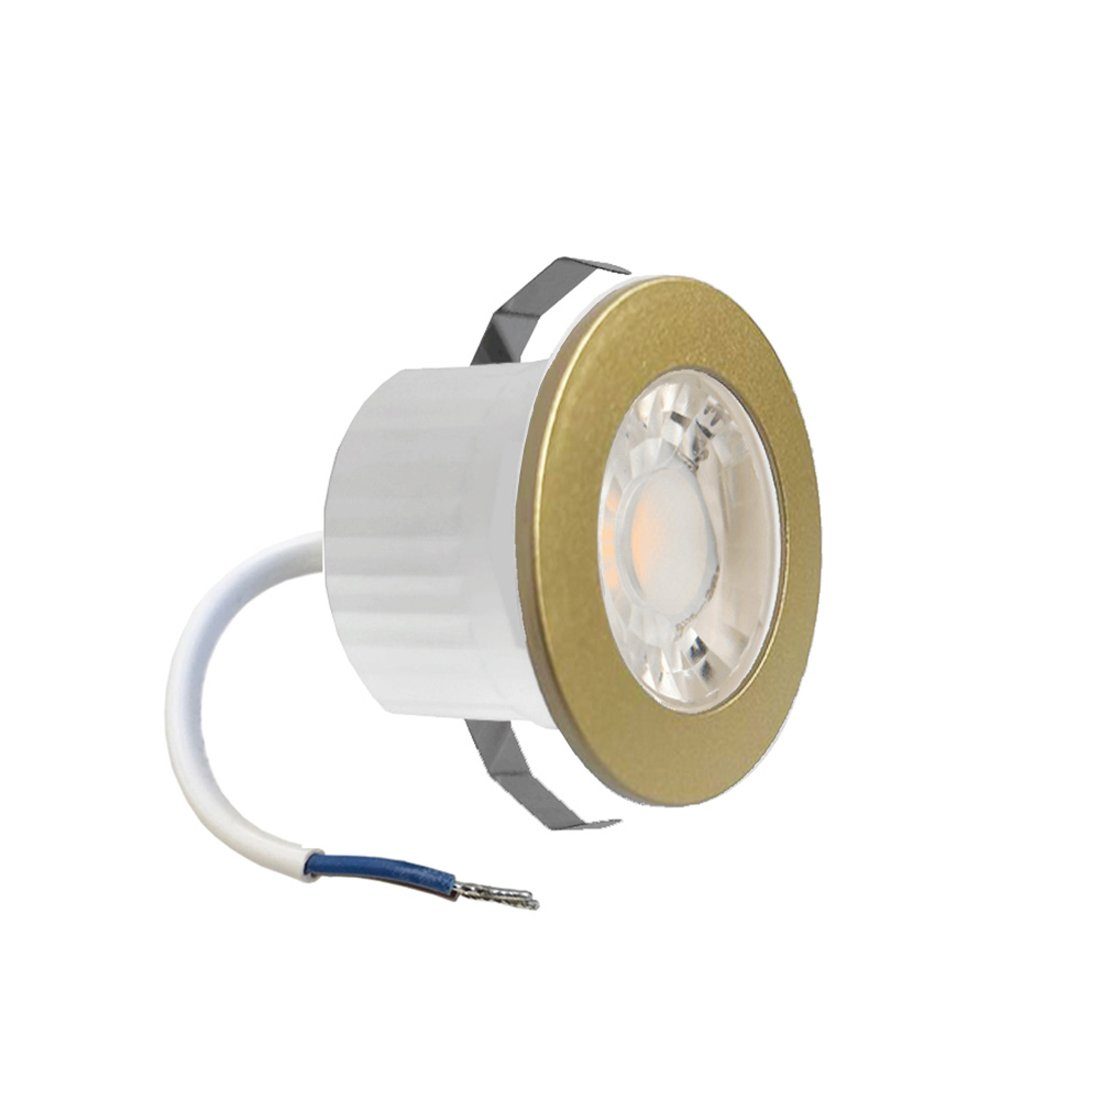 Braytron LED Einbaustrahler 3 Watt LED mini Einbauleuchte Einbaustrahler Spot Gold Warmweiß Schutz, Einbauspot Rahmenfarbe Gold für innen und außen IP54 Warmweiß